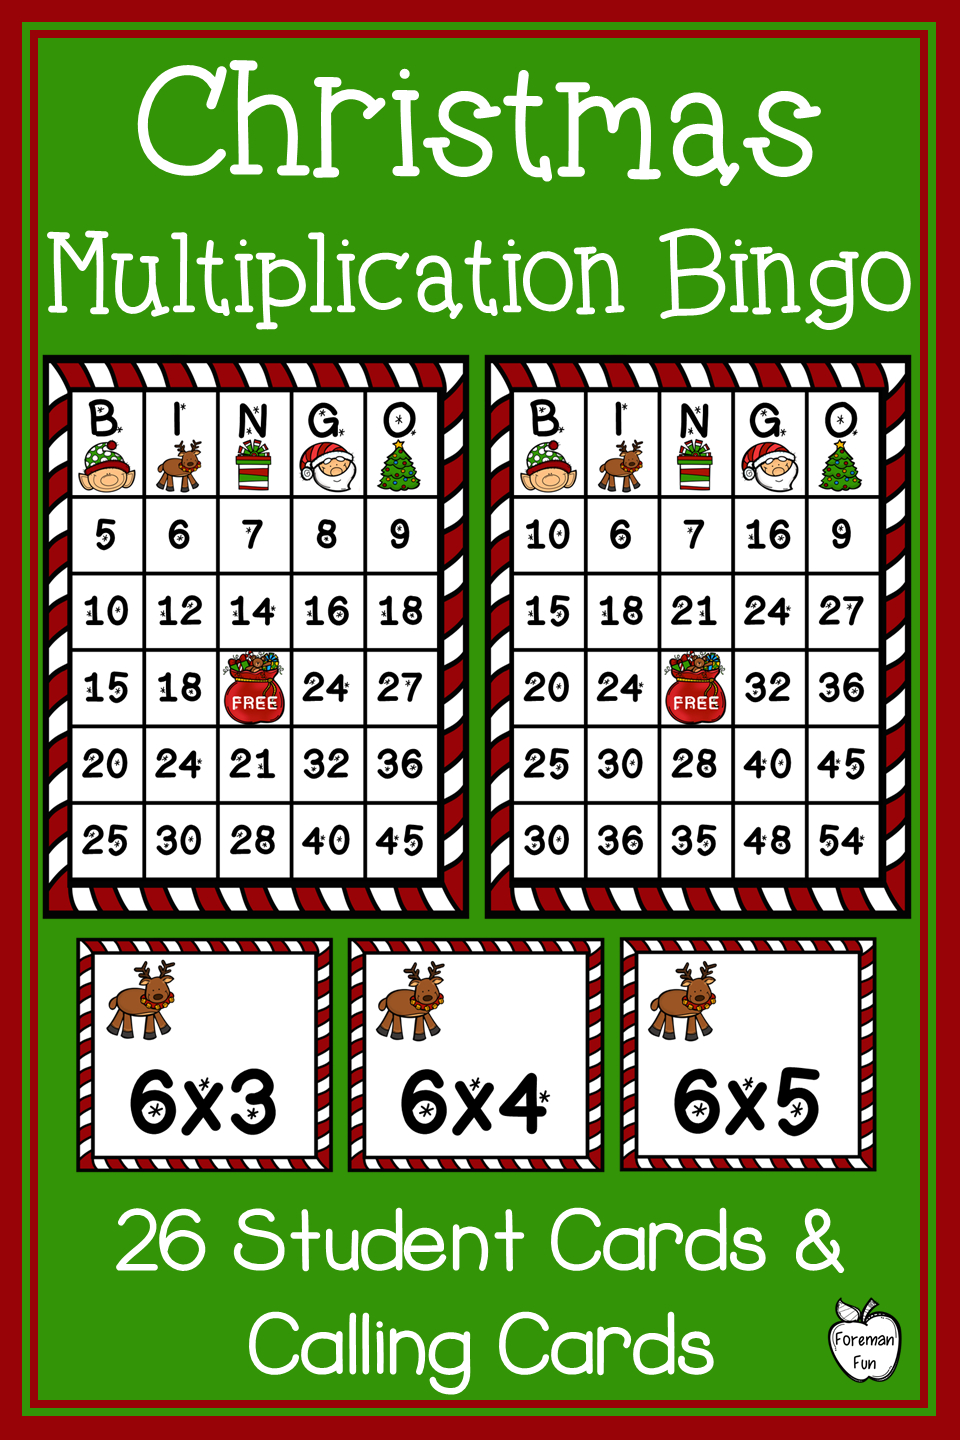 Multiplication Bingo Printable Pdf - Printable World Holiday